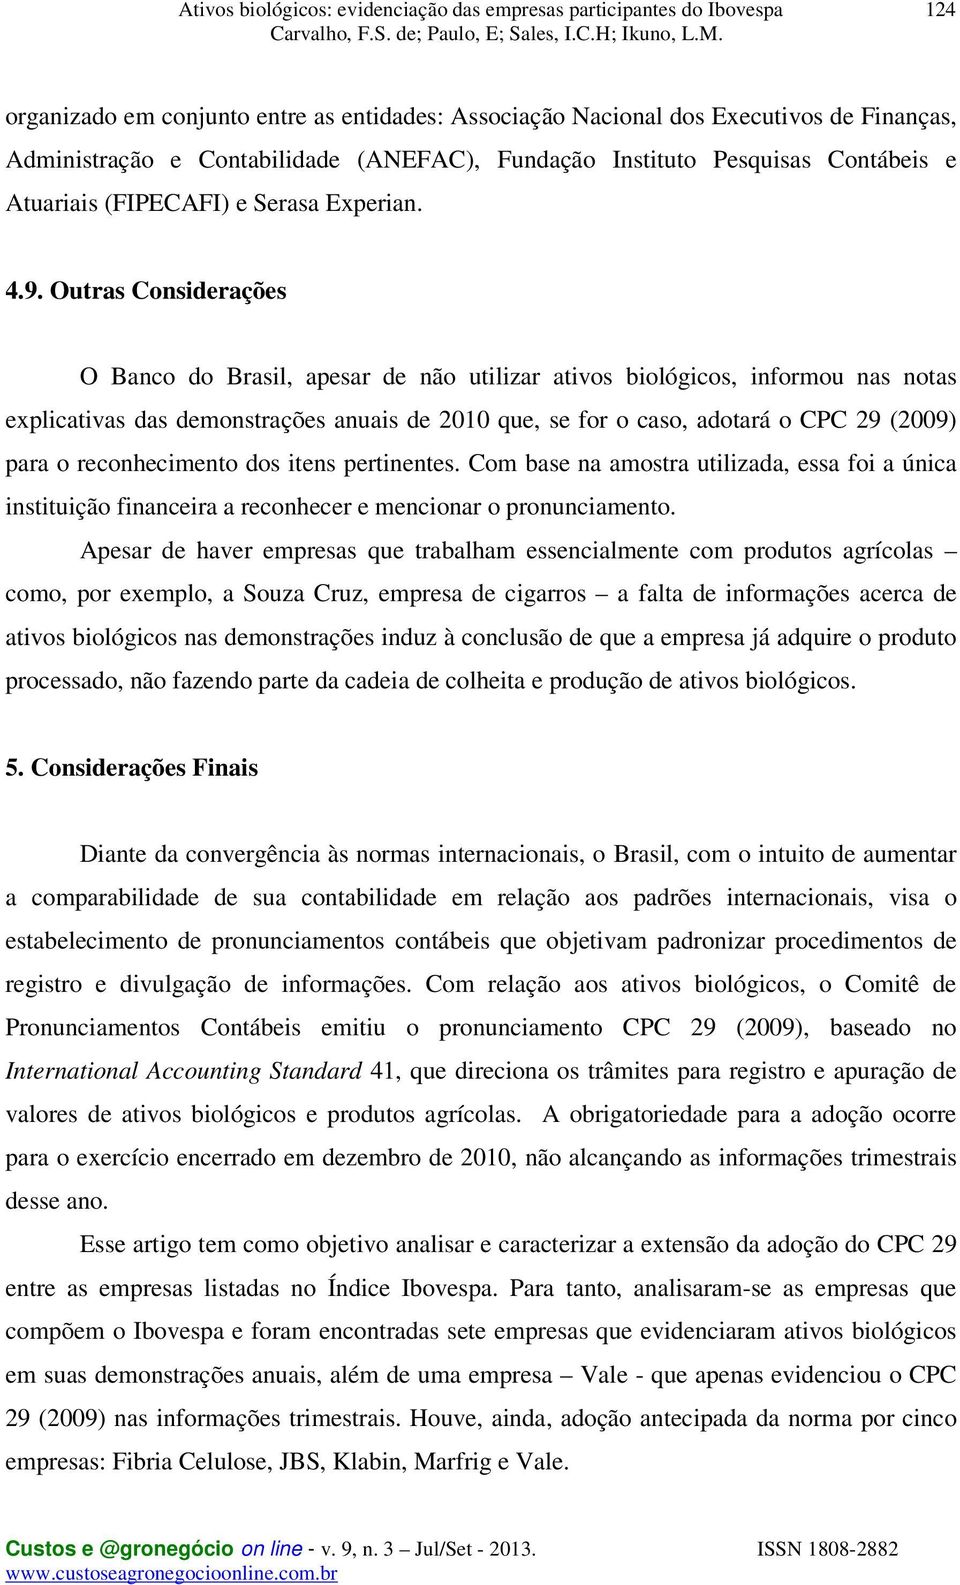 Outras Considerações O Banco do Brasil, apesar de não utilizar ativos biológicos, informou nas notas explicativas das demonstrações anuais de 2010 que, se for o caso, adotará o CPC 29 (2009) para o